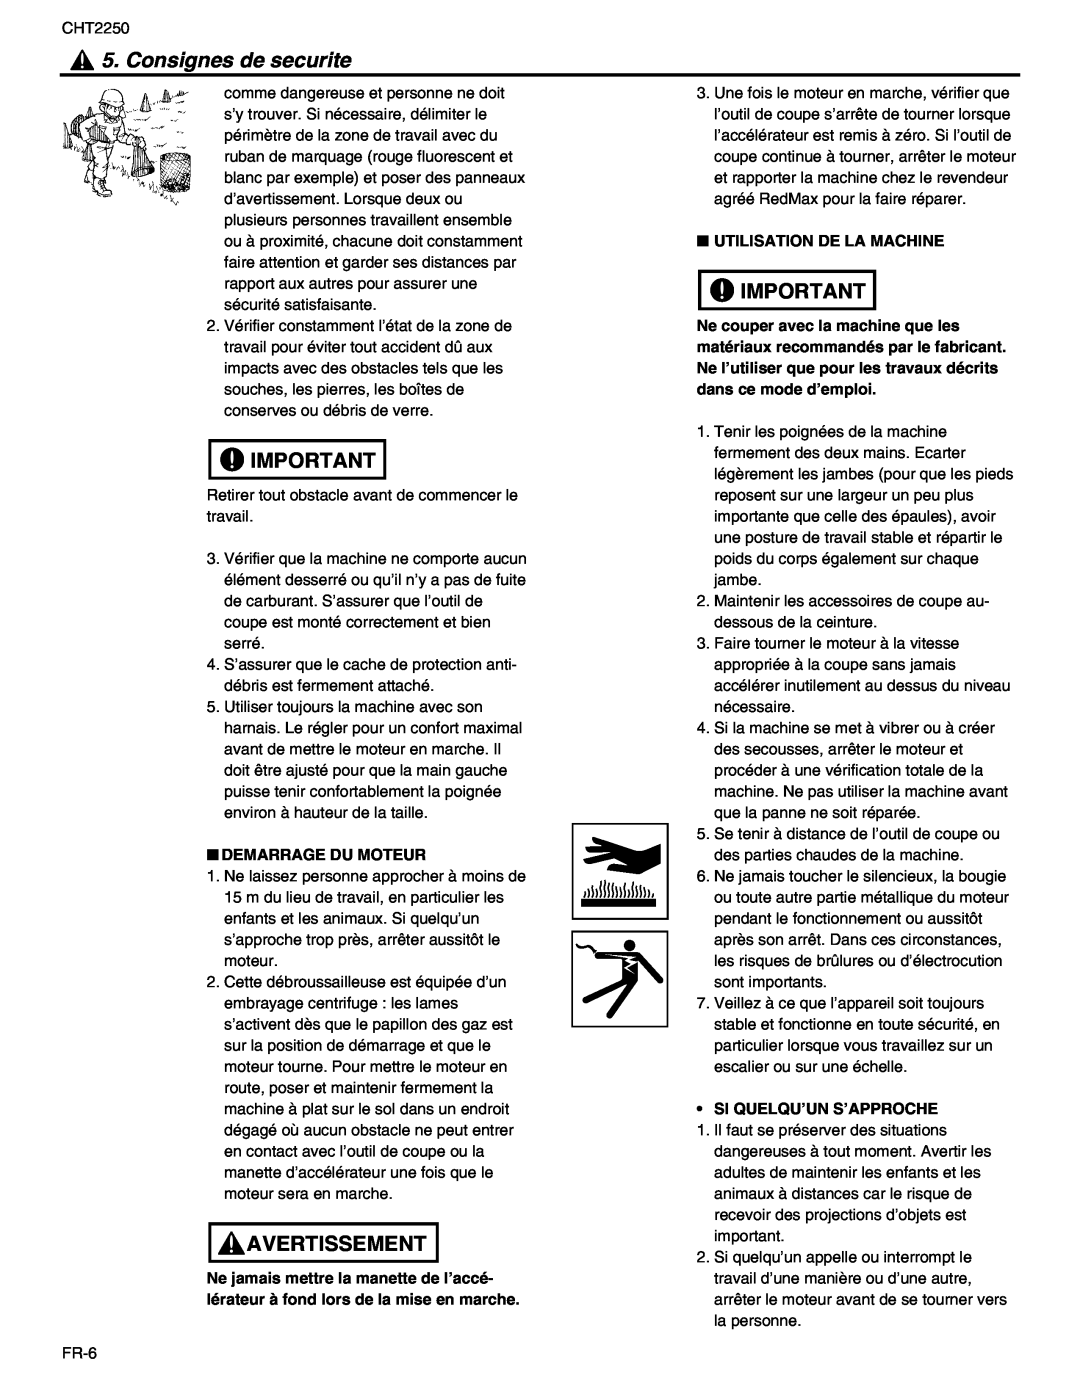 RedMax CHT2250 manual Consignes de securite, Avertissement, Demarrage Du Moteur, Utilisation De La Machine 